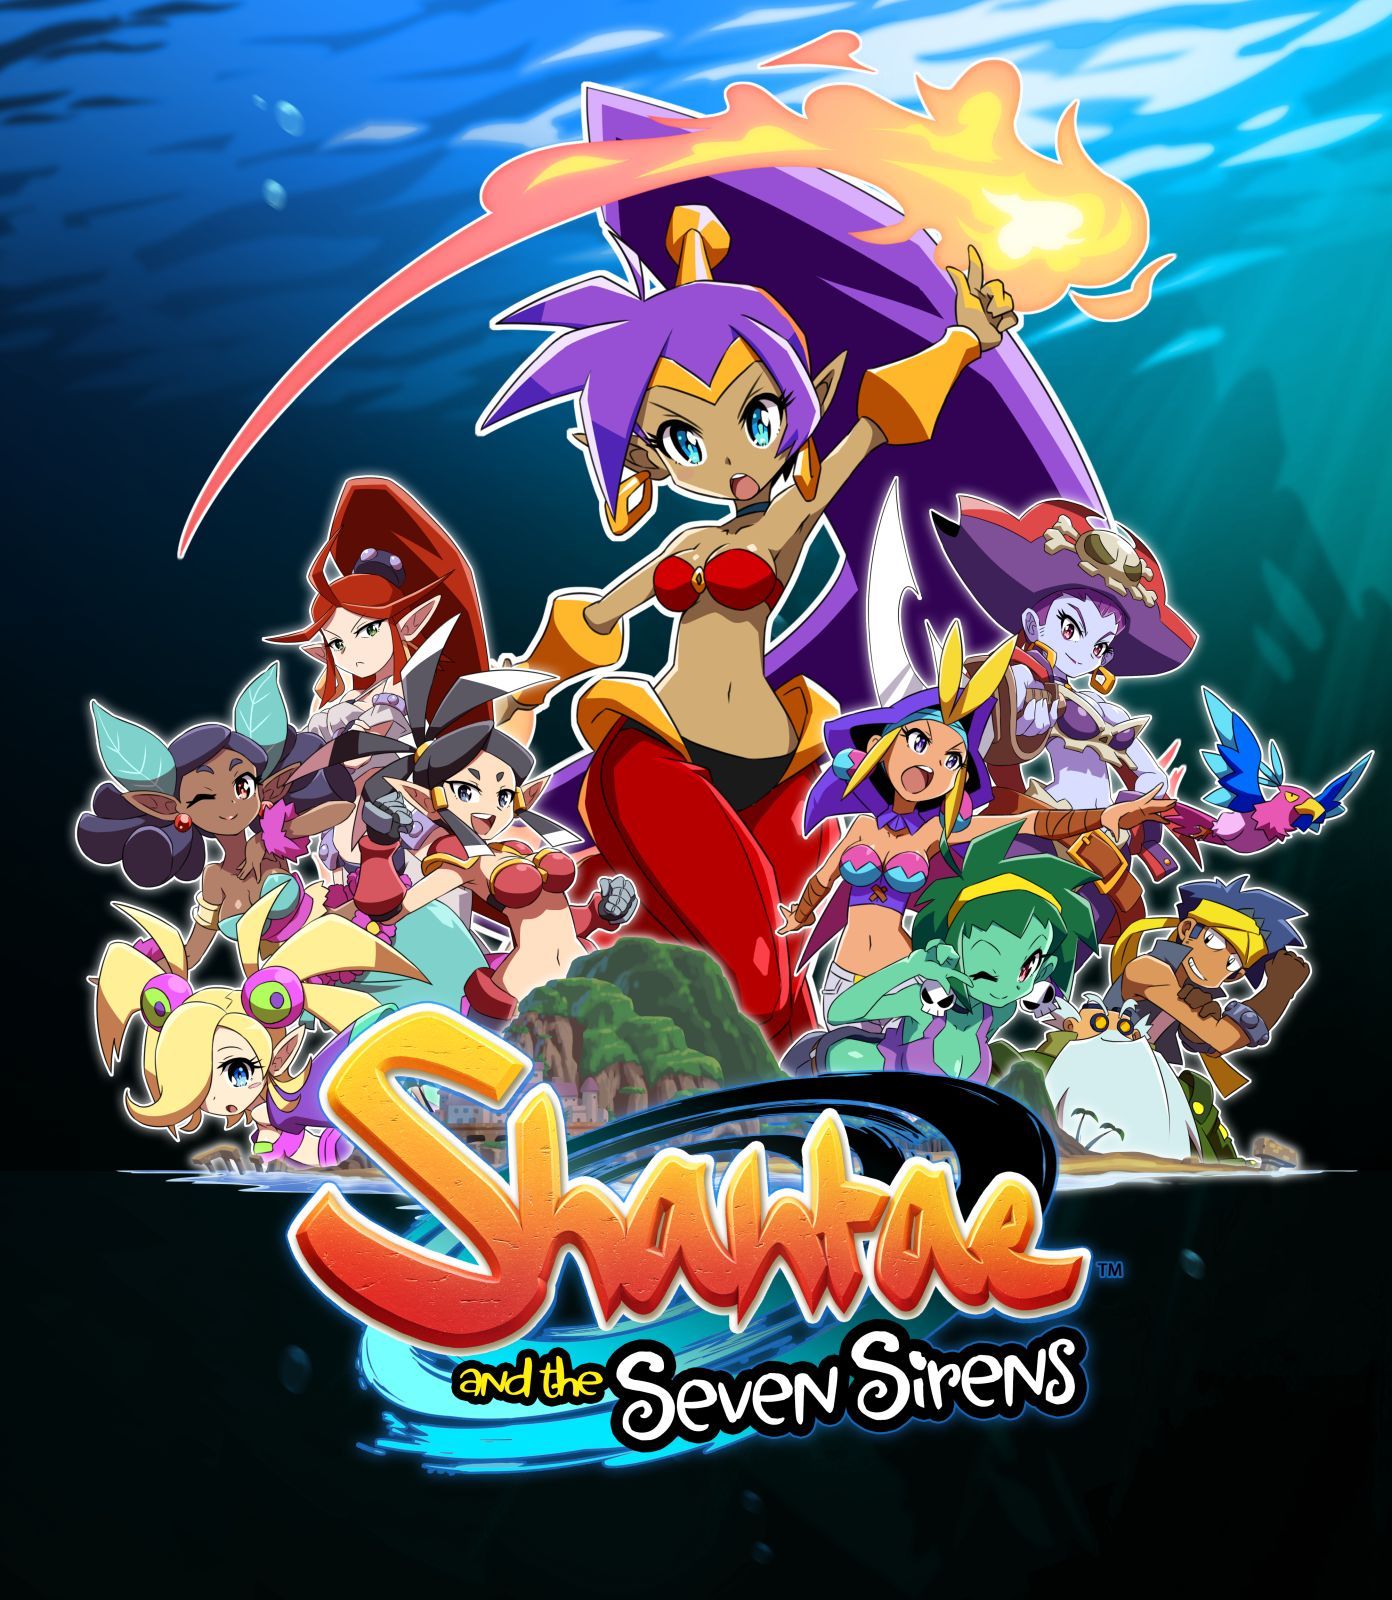 Shantae wallpaper for Wallpaper Engine (4K 60fps) - YouTube